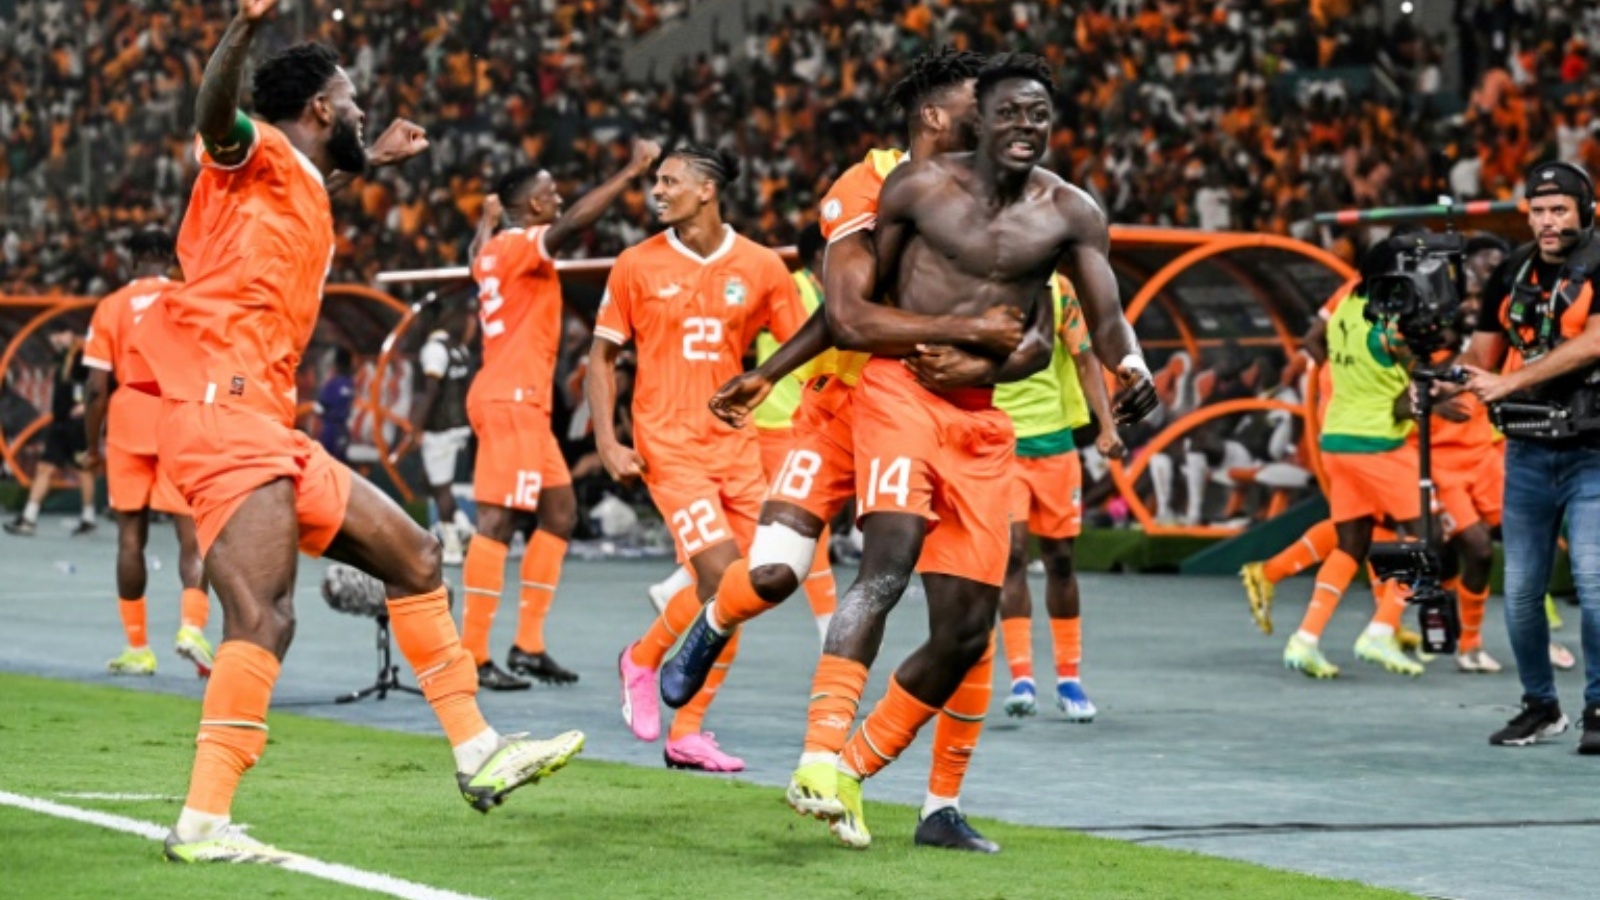 عمر دياكيتيه (14) مهاجم ساحل العاج يحتفل مع زملائه بهدف الفوز على مالي 2-1 بعد التمديد (الوقت الأصلي 1-1) على ملعب السلام في بواكي، في ربع نهائي كأس أمم إفريقيا لكرة القدم. 3 شباط (فبراير) 2024